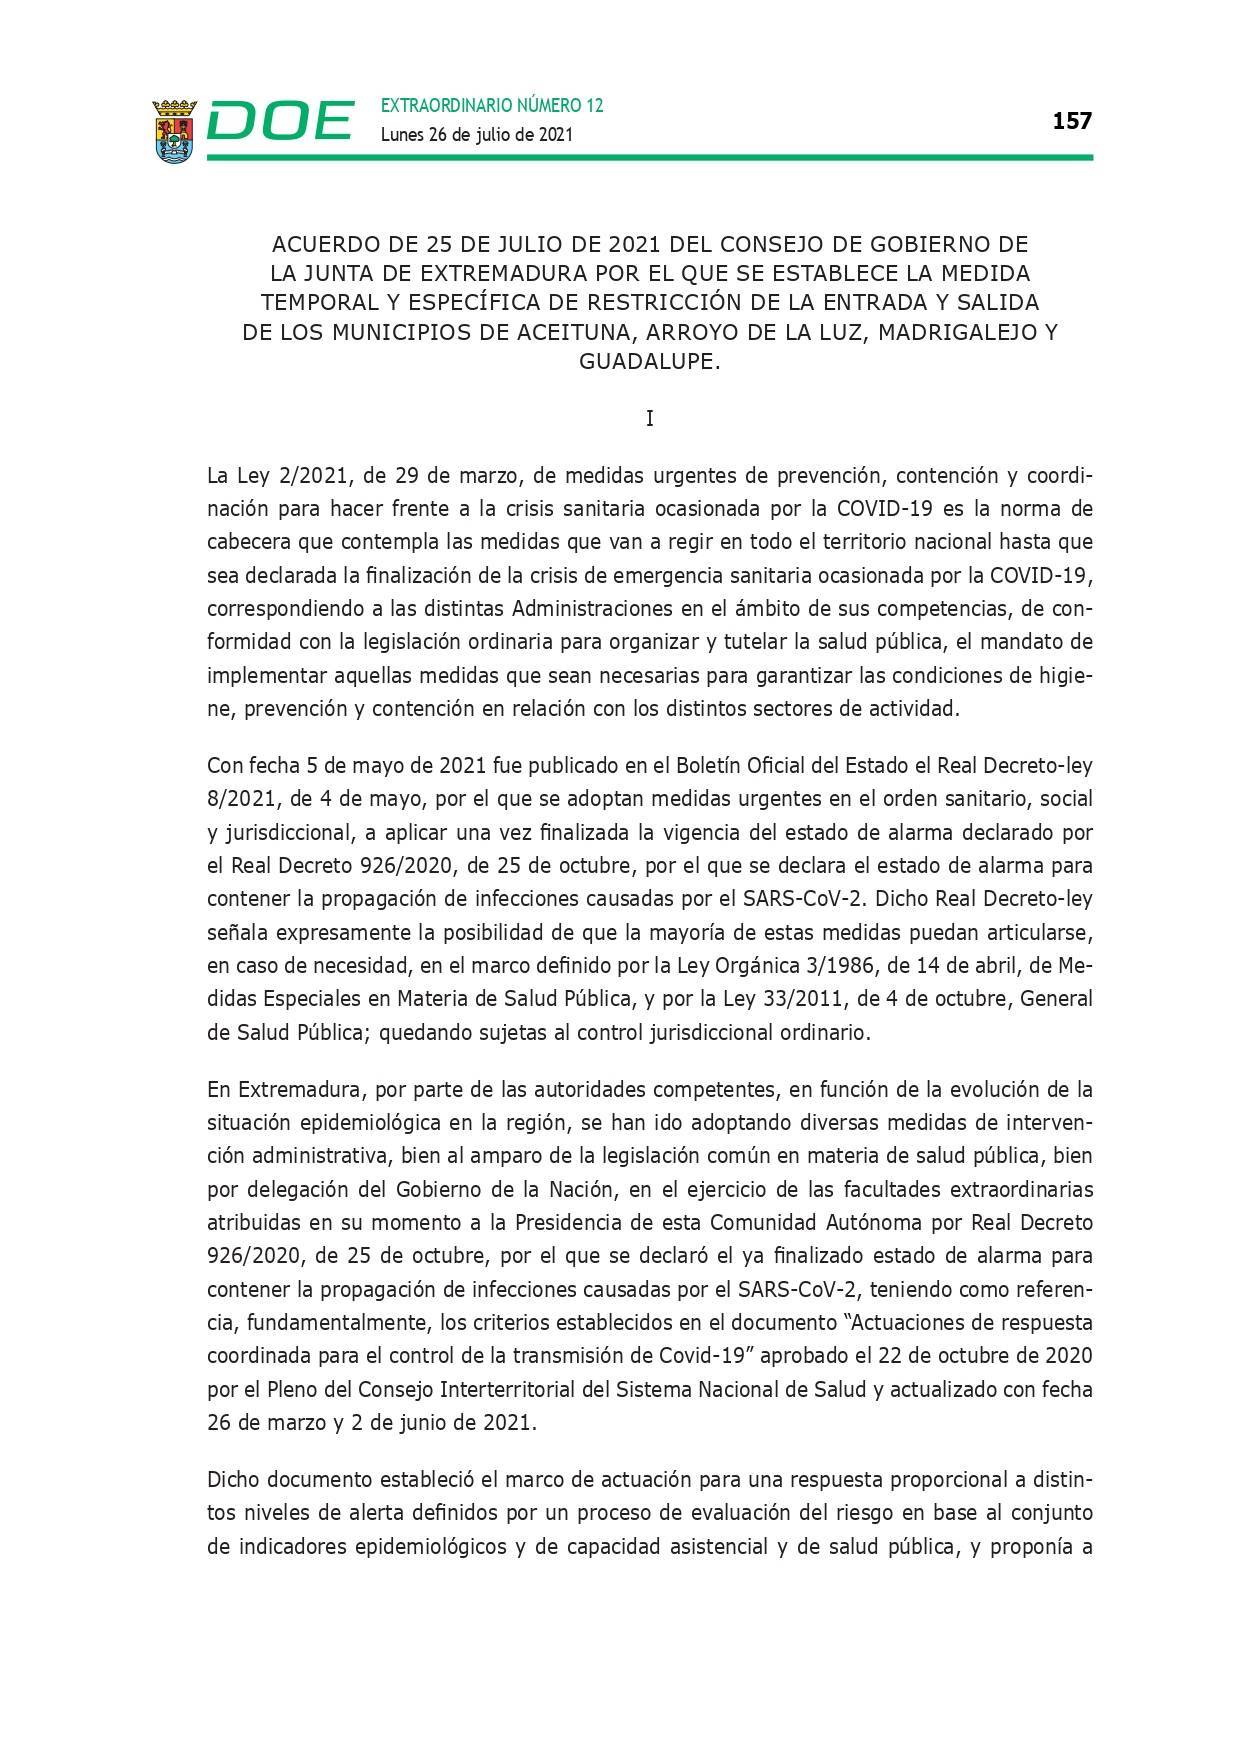 Restricción de la entrada y salida por COVID-19 (julio 2021) - Guadalupe (Cáceres) 3